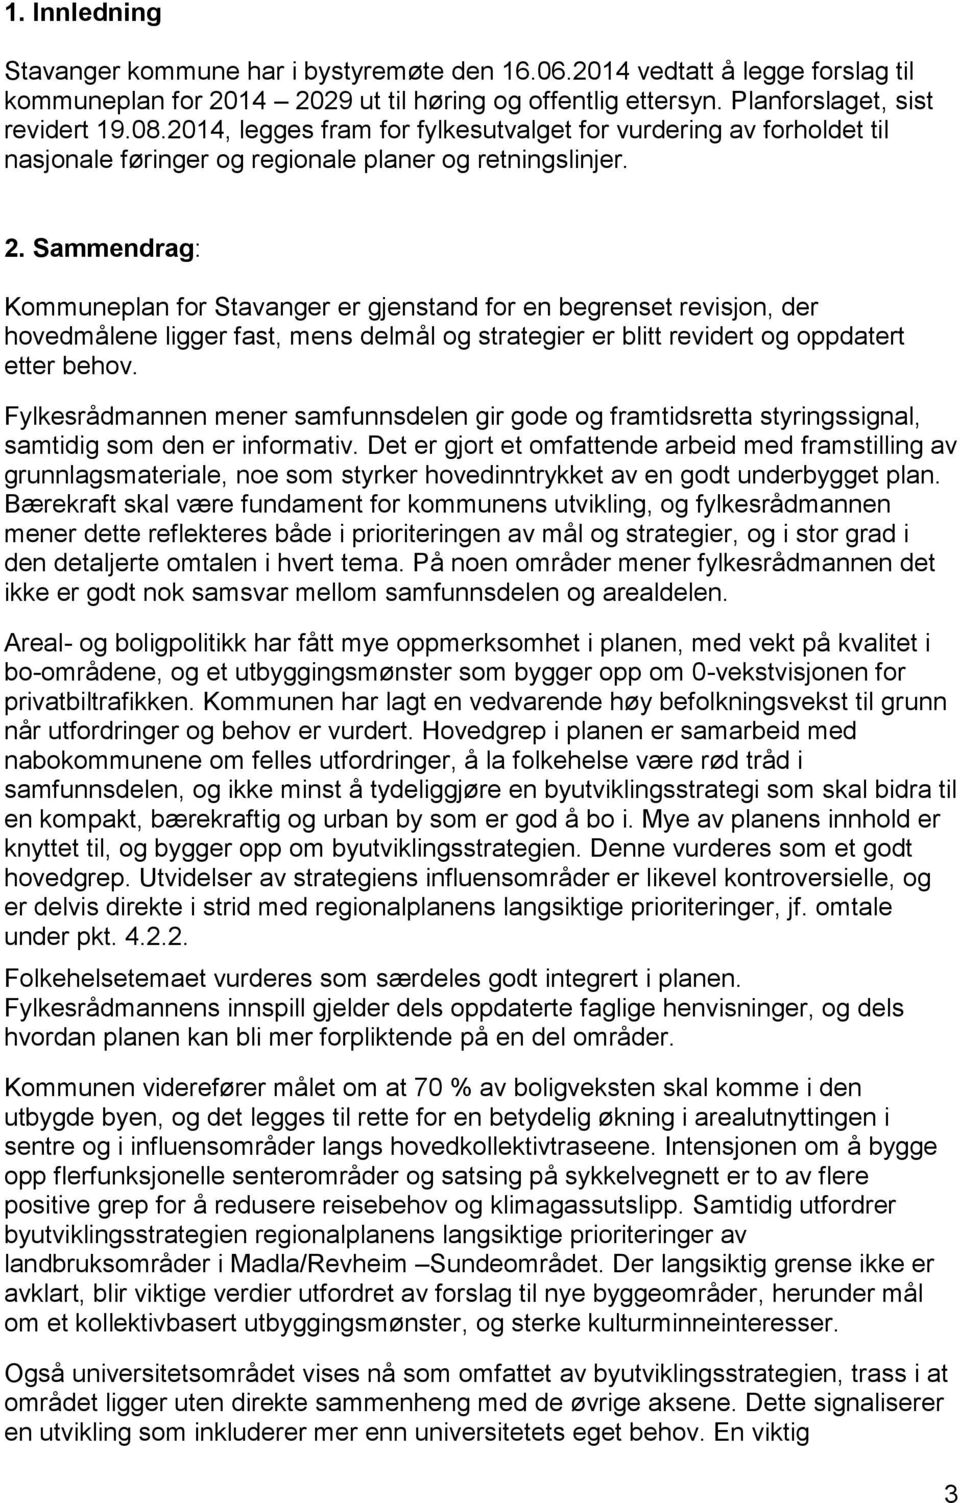 Sammendrag: Kommuneplan for Stavanger er gjenstand for en begrenset revisjon, der hovedmålene ligger fast, mens delmål og strategier er blitt revidert og oppdatert etter behov.